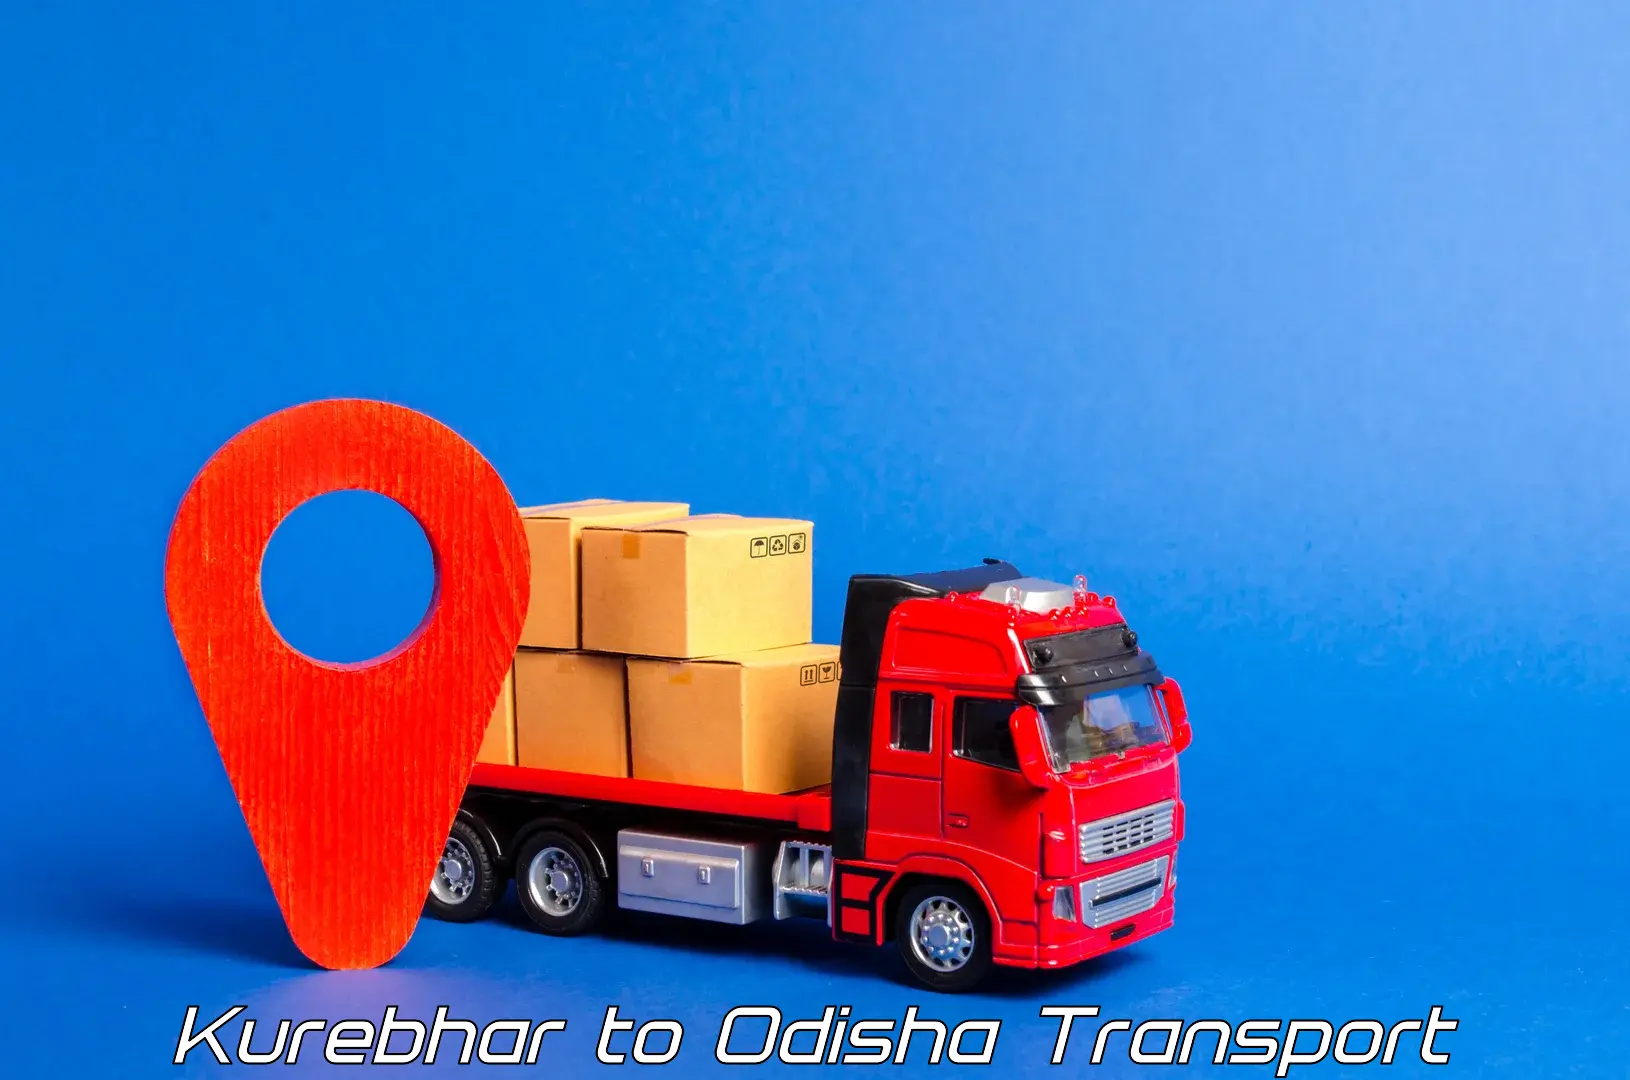 Furniture transport service Kurebhar to Balangir